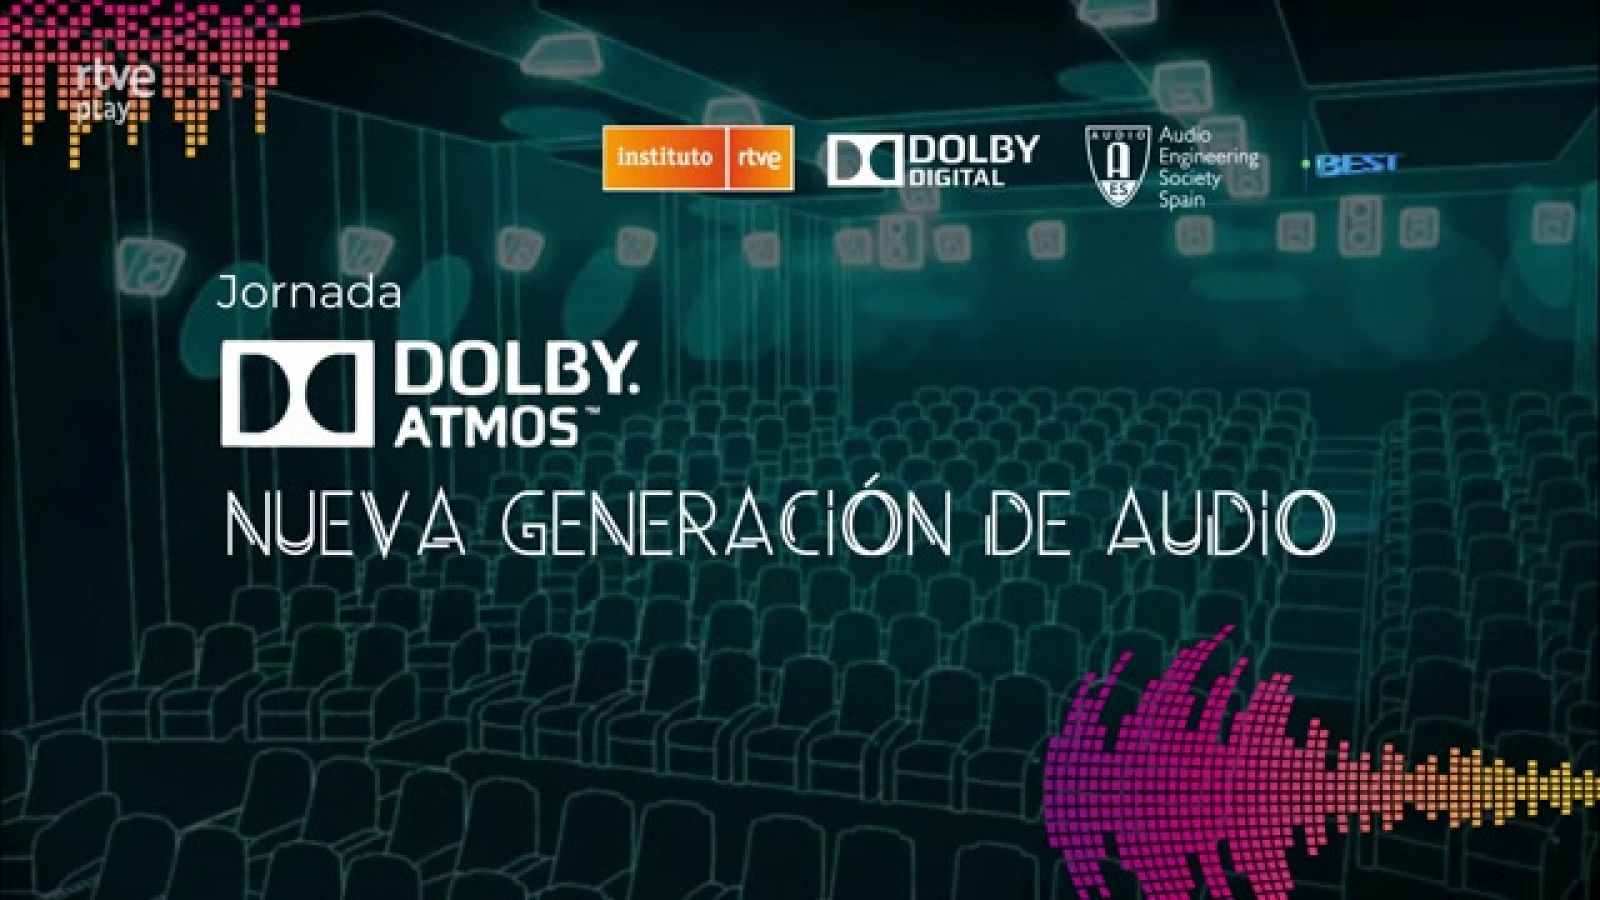 Jornada DOLBY ATMOS Nueva generación de audio